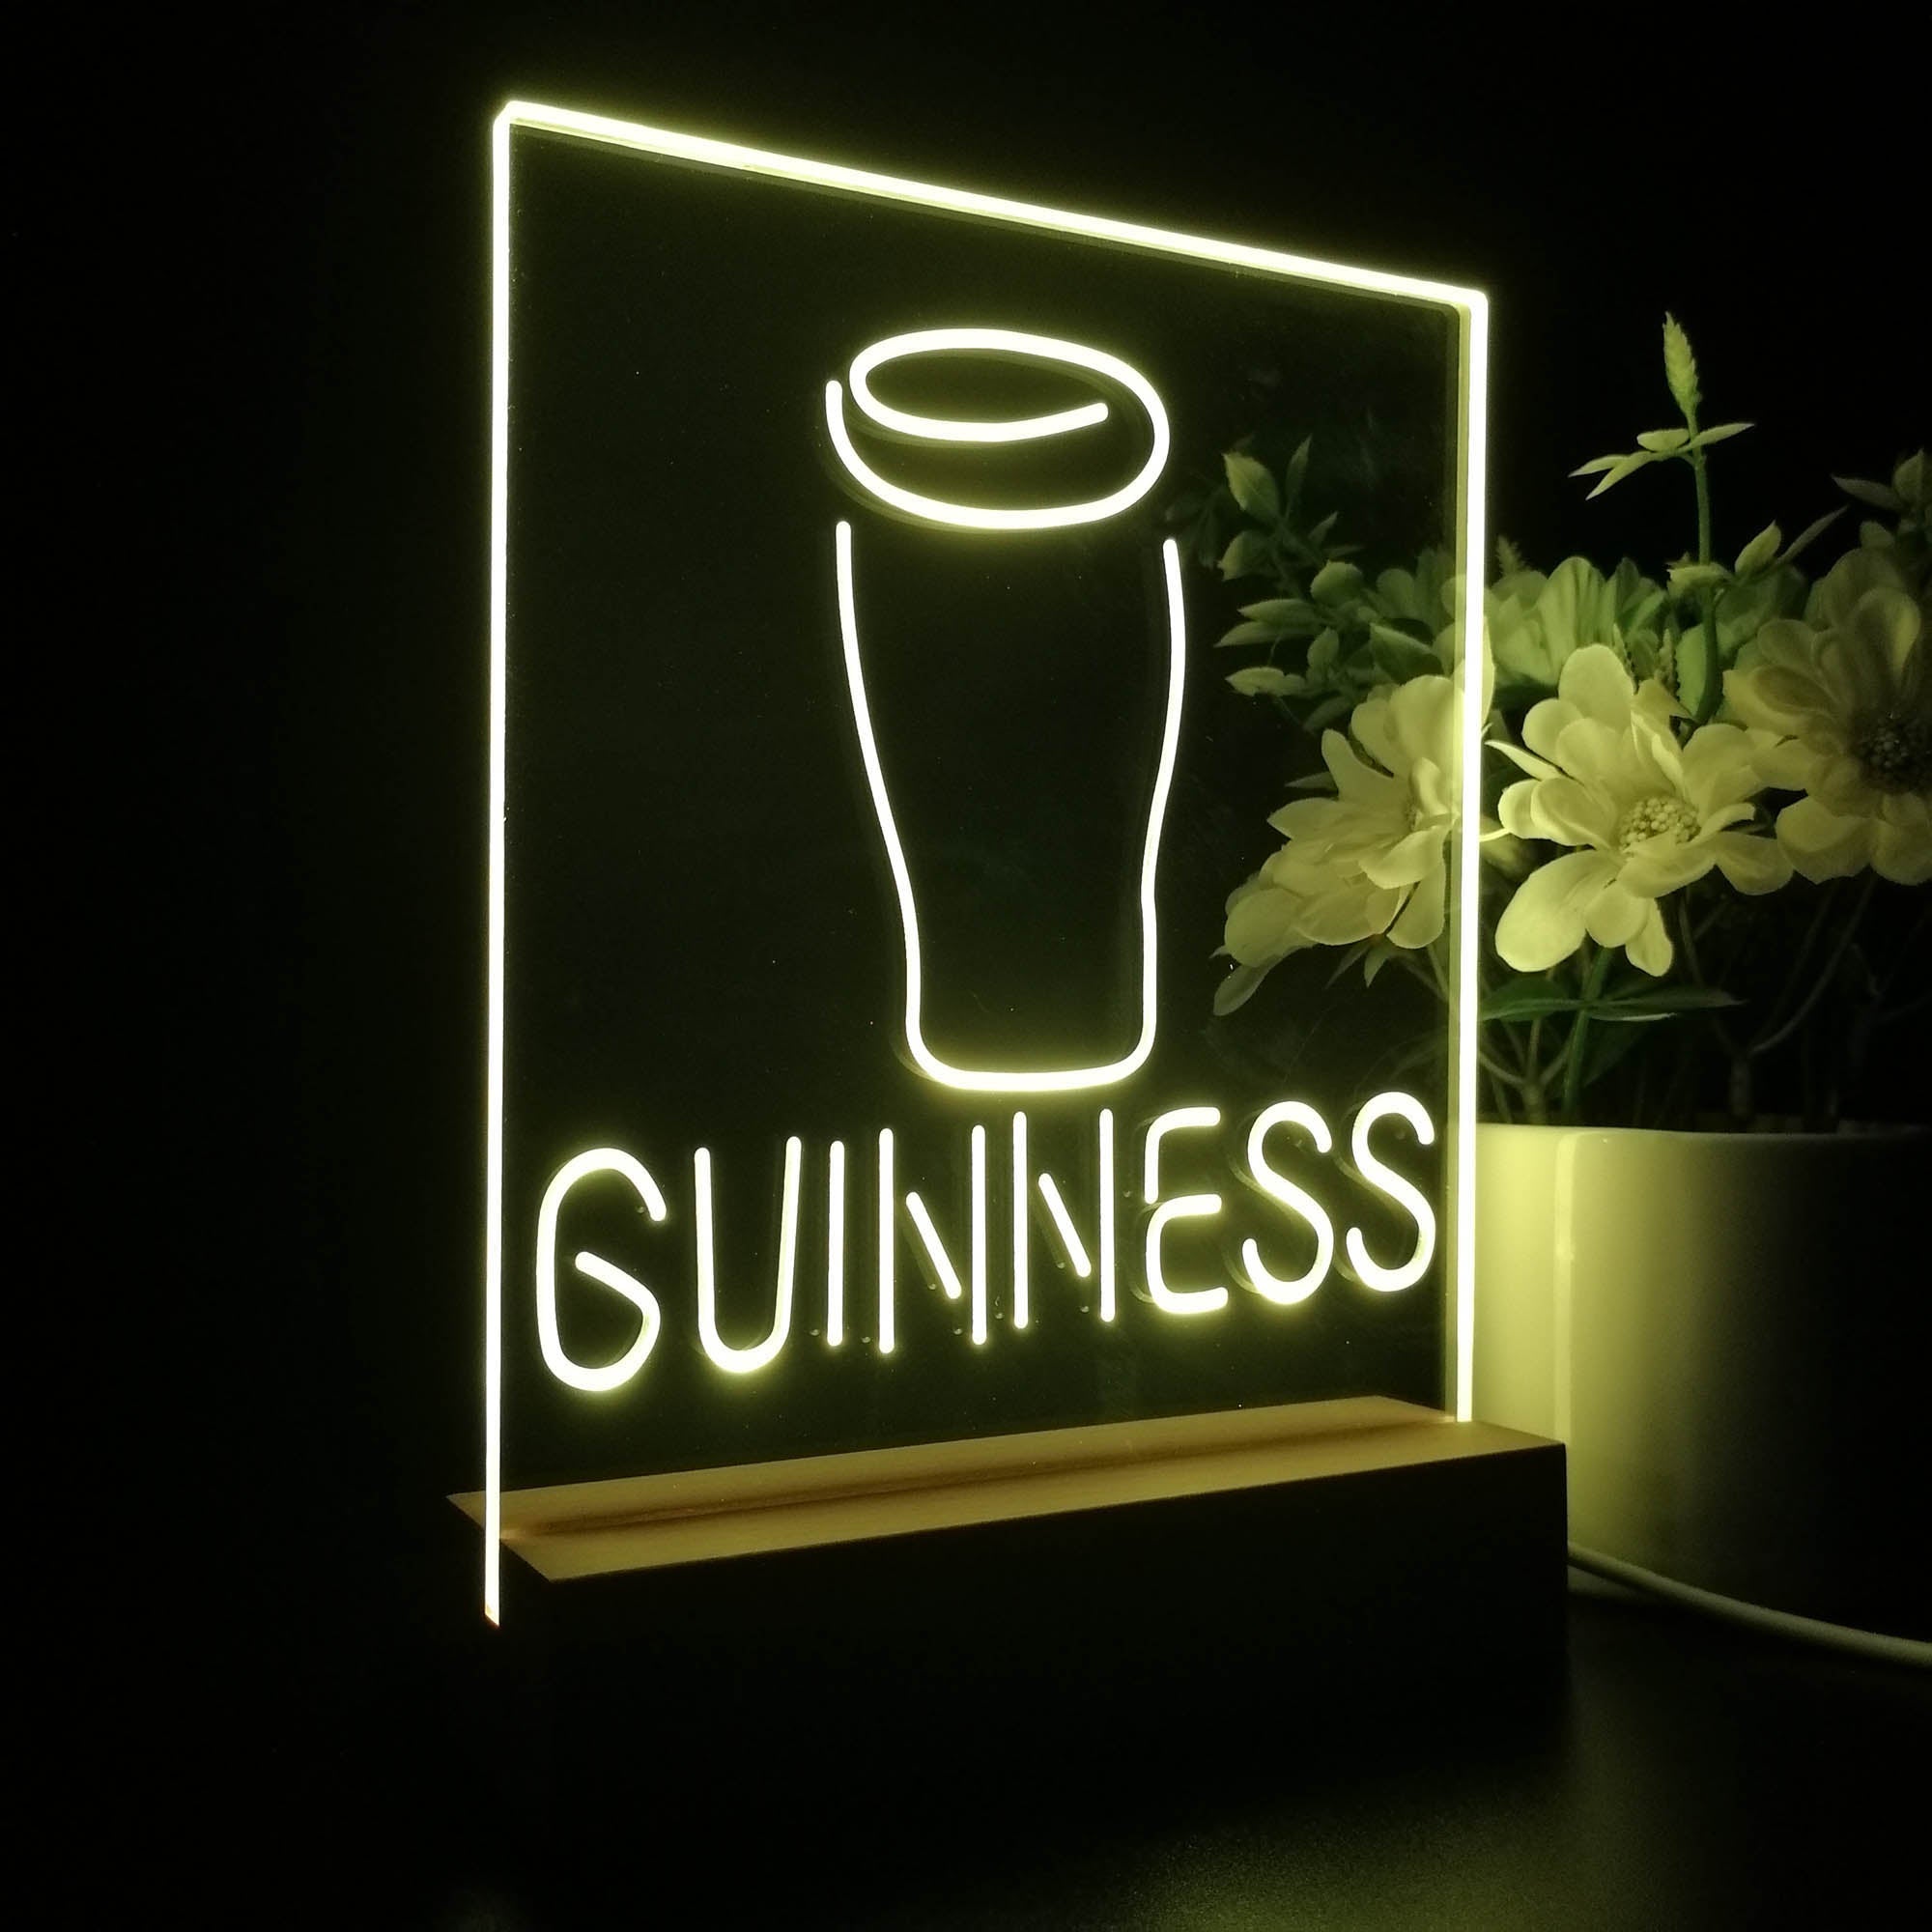 Guinness Glass Beer on tap Bar Decor Night Light LED Sign